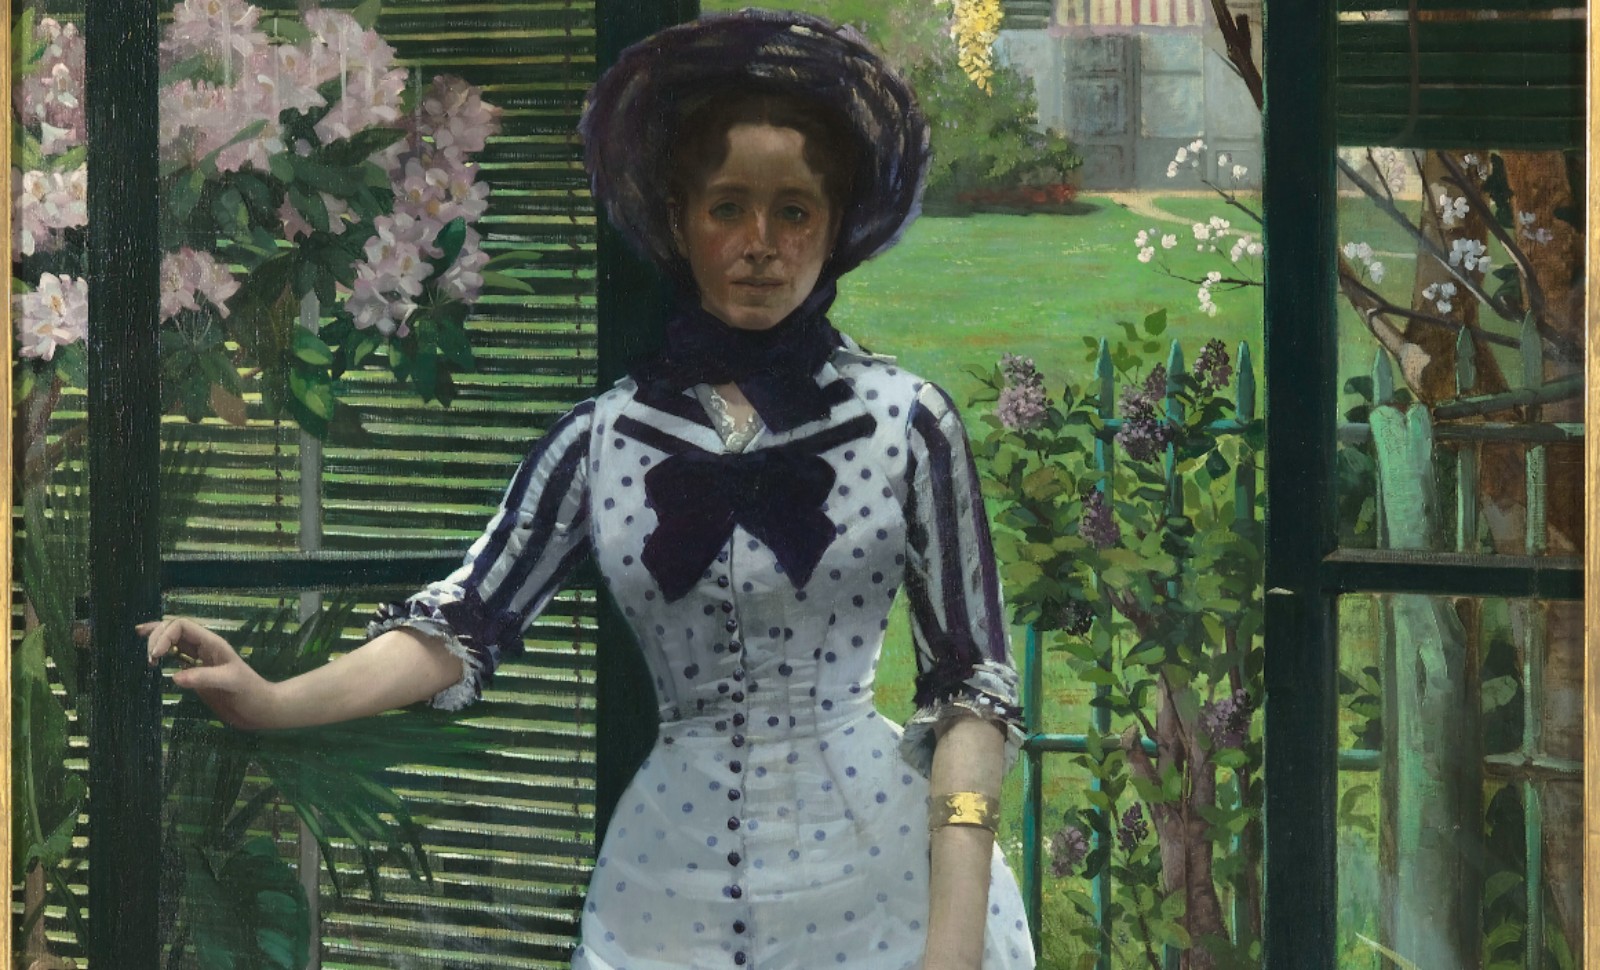 « Côté jardin: de Monet à Bonnard », une exposition qui ne pouvait avoir lieu qu’à Giverny!